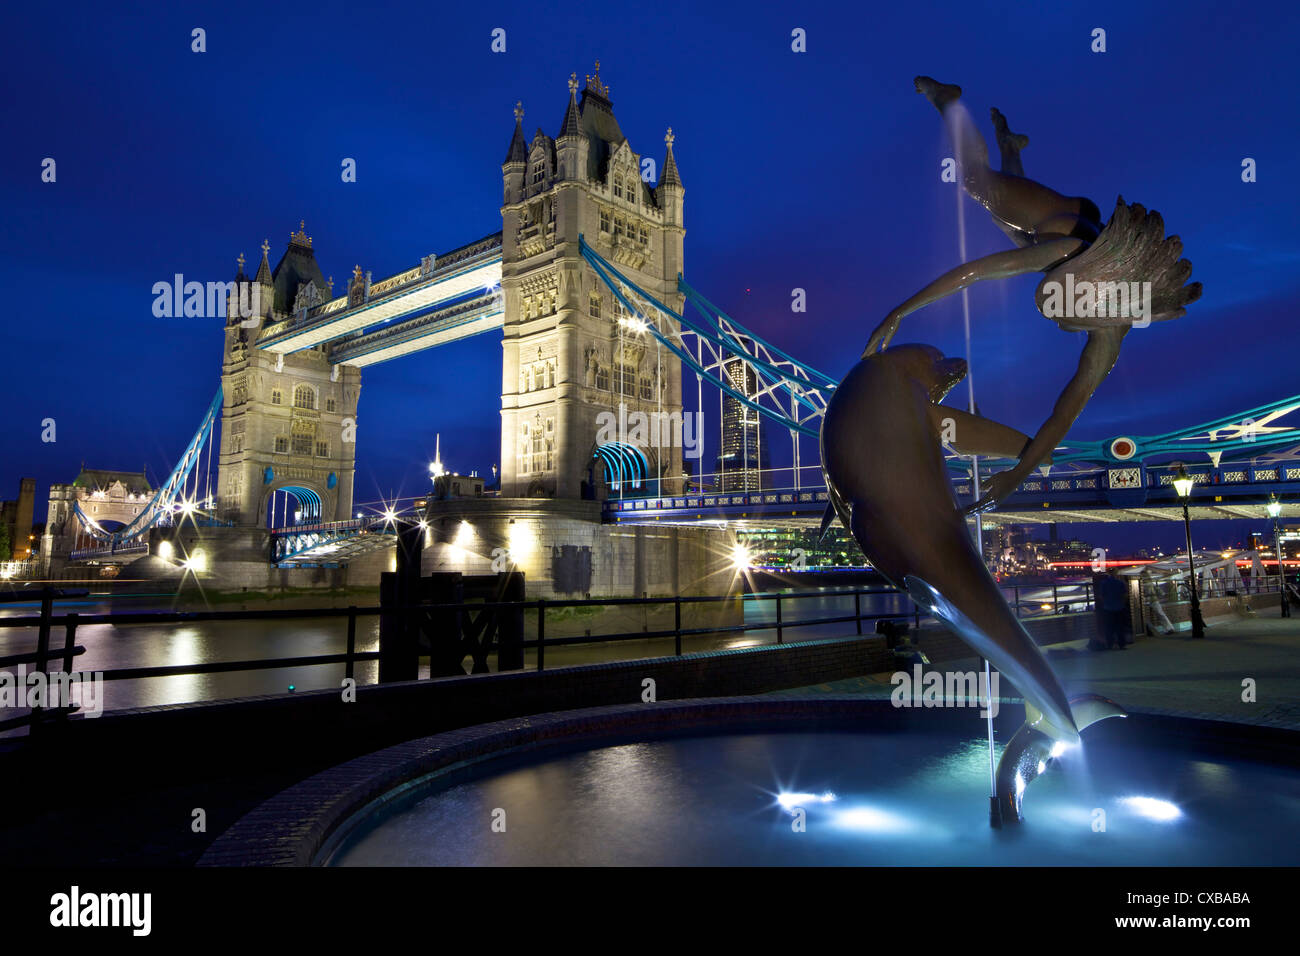 Ragazza con un delfino, statua di David Wynne, illuminata di notte nella parte anteriore del Tower Bridge, London, England, Regno Unito Foto Stock